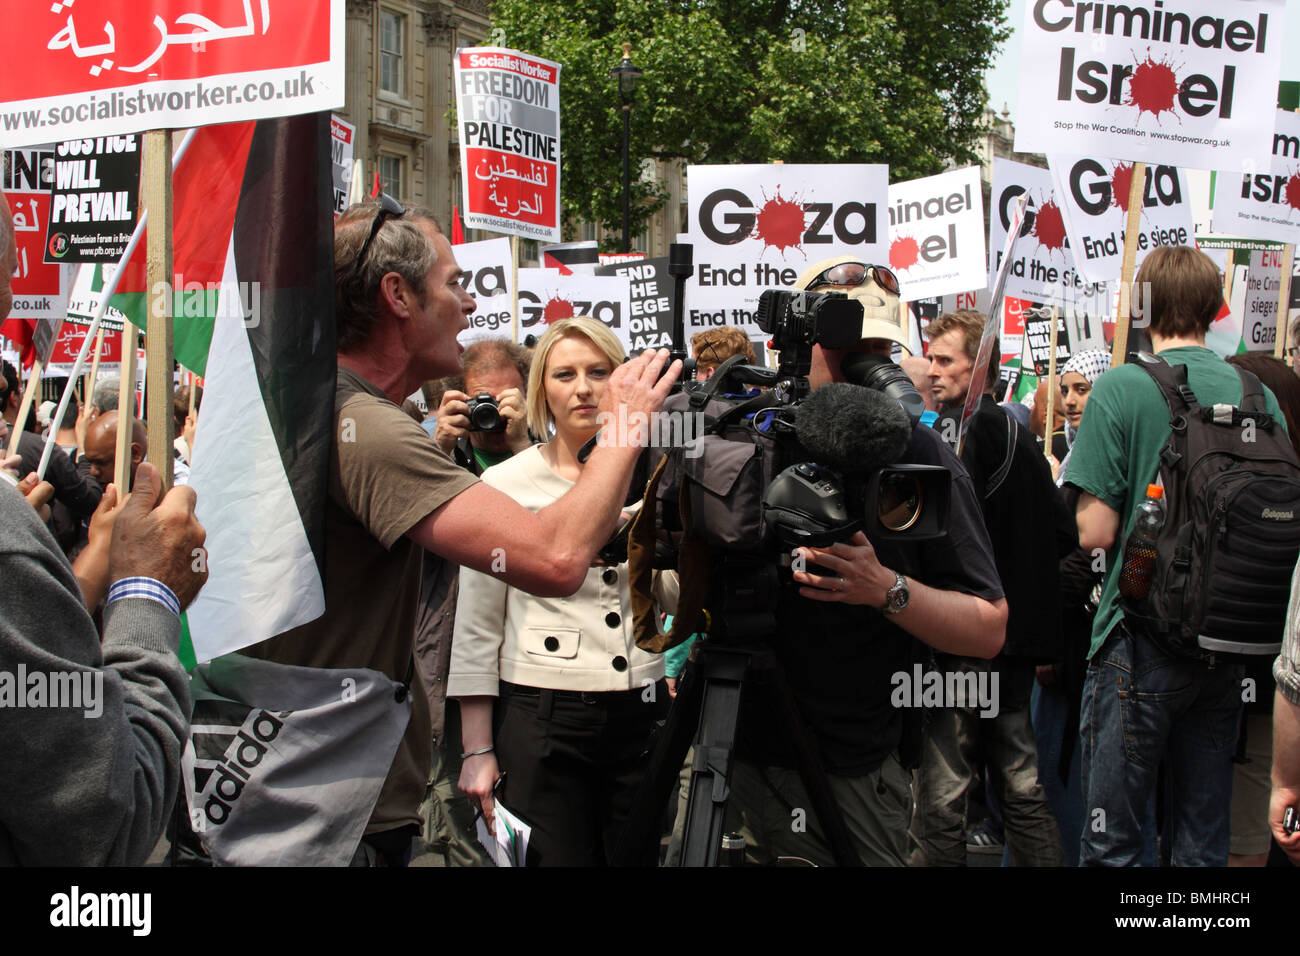 Demonstranten versucht, eine Ausstrahlung Sky News TV-Reporter bei der "Freiheit für Palästina"-Demonstration in London zu verhindern. Stockfoto